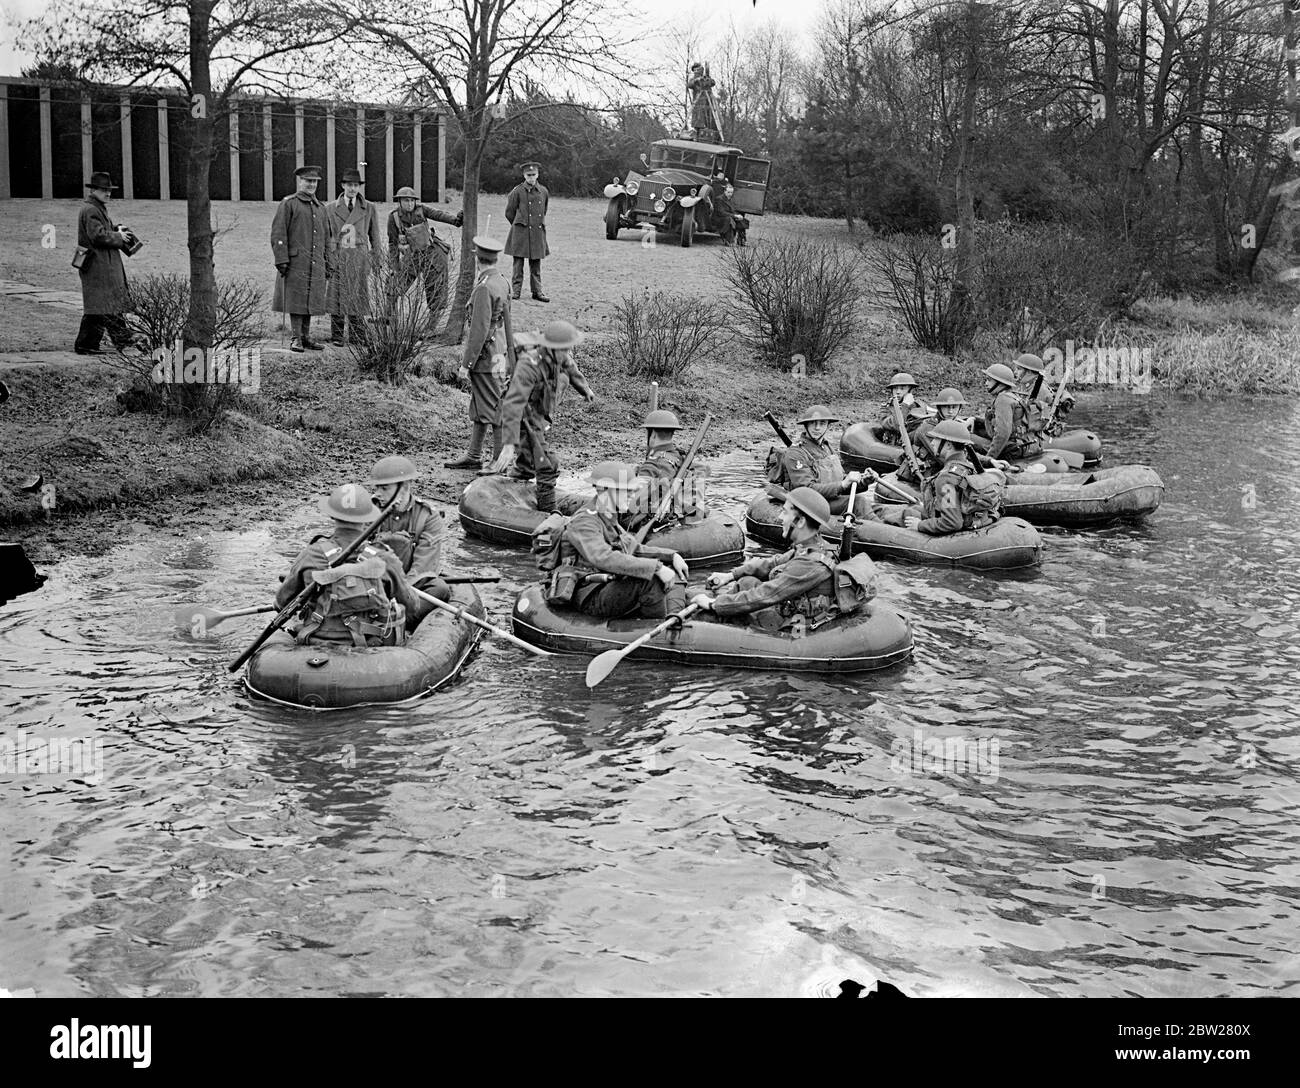 Troupes ford Lake dans des bateaux aérodynamiques à la démonstration d'Aldershot. Les derniers équipements et méthodes d'entraînement des détachements d'infanterie de l'armée britannique ont été démontrés par le premier Batalion le South Staffordshire Regiment dans une série d'exercices à Mytchett, près d'Aldershot, Hampshire. Photos spectacles, , troupes fording Mytchatt Lake en bateaux pneumatiques Aero. Les bateaux, qui peuvent être repliés dans un petit espace, transportent deux hommes avec leur équipement. 21 janvier 1938 Banque D'Images